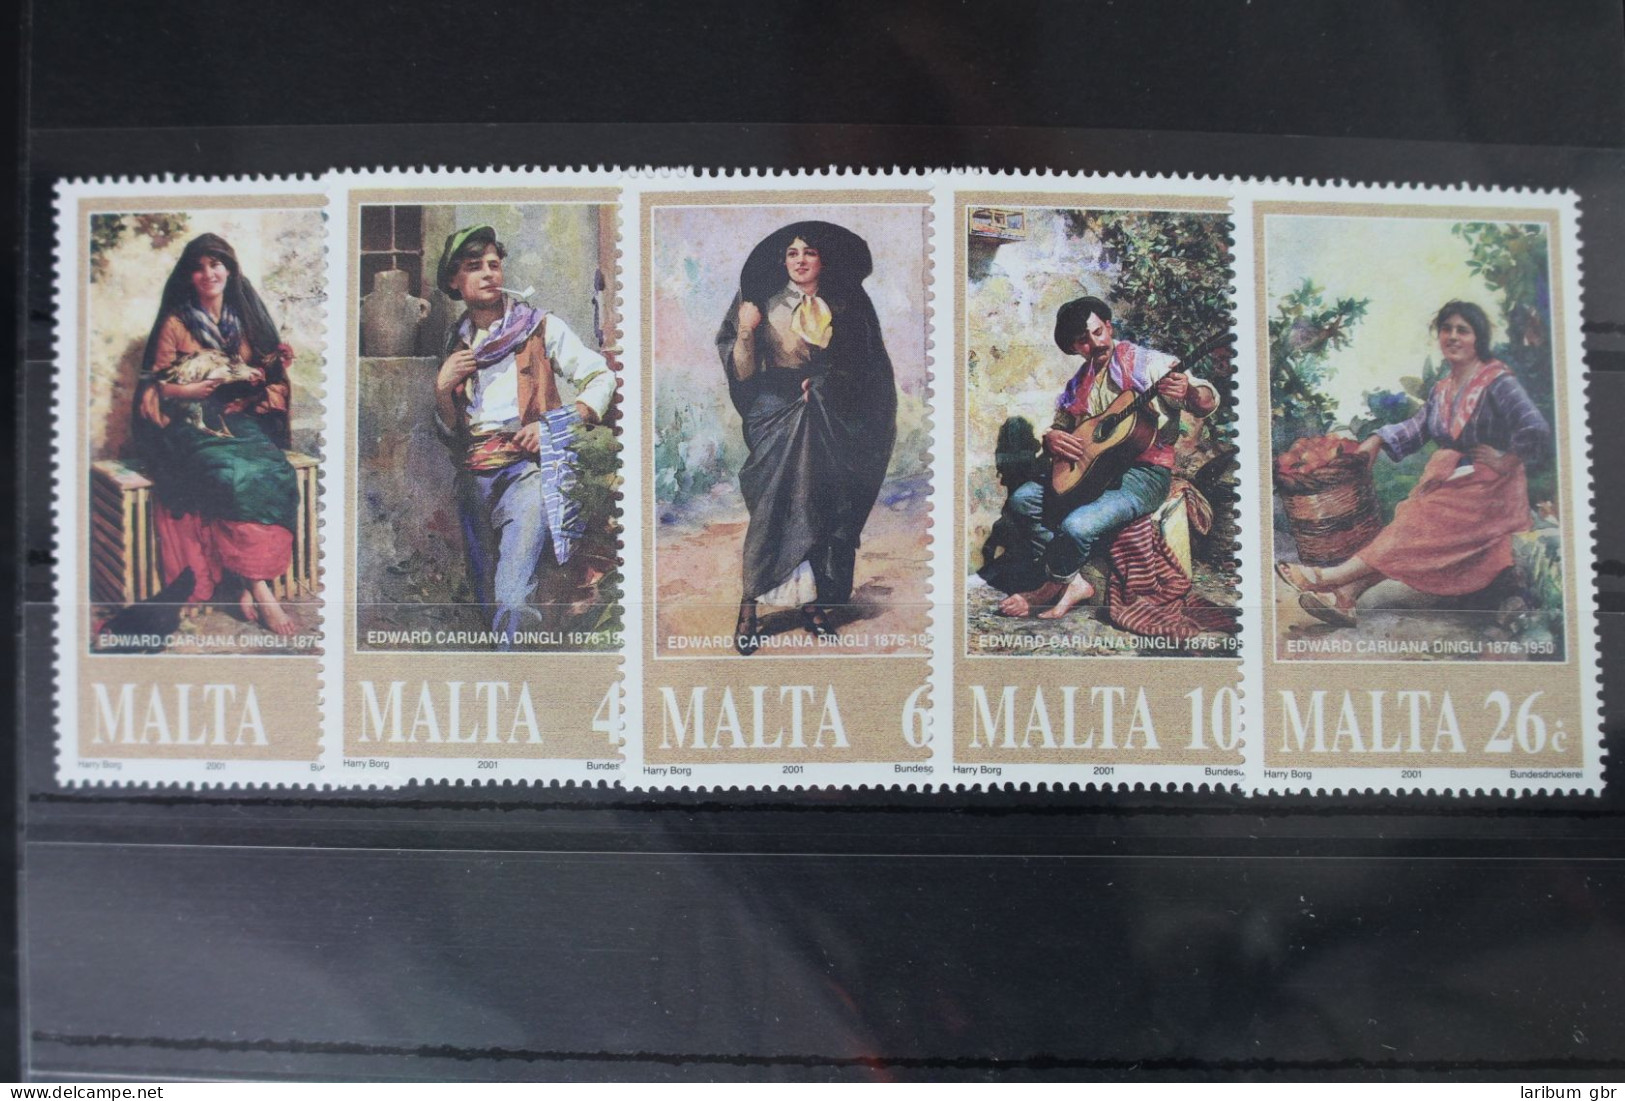 Malta 1162-1166 Postfrisch #WI124 - Malte